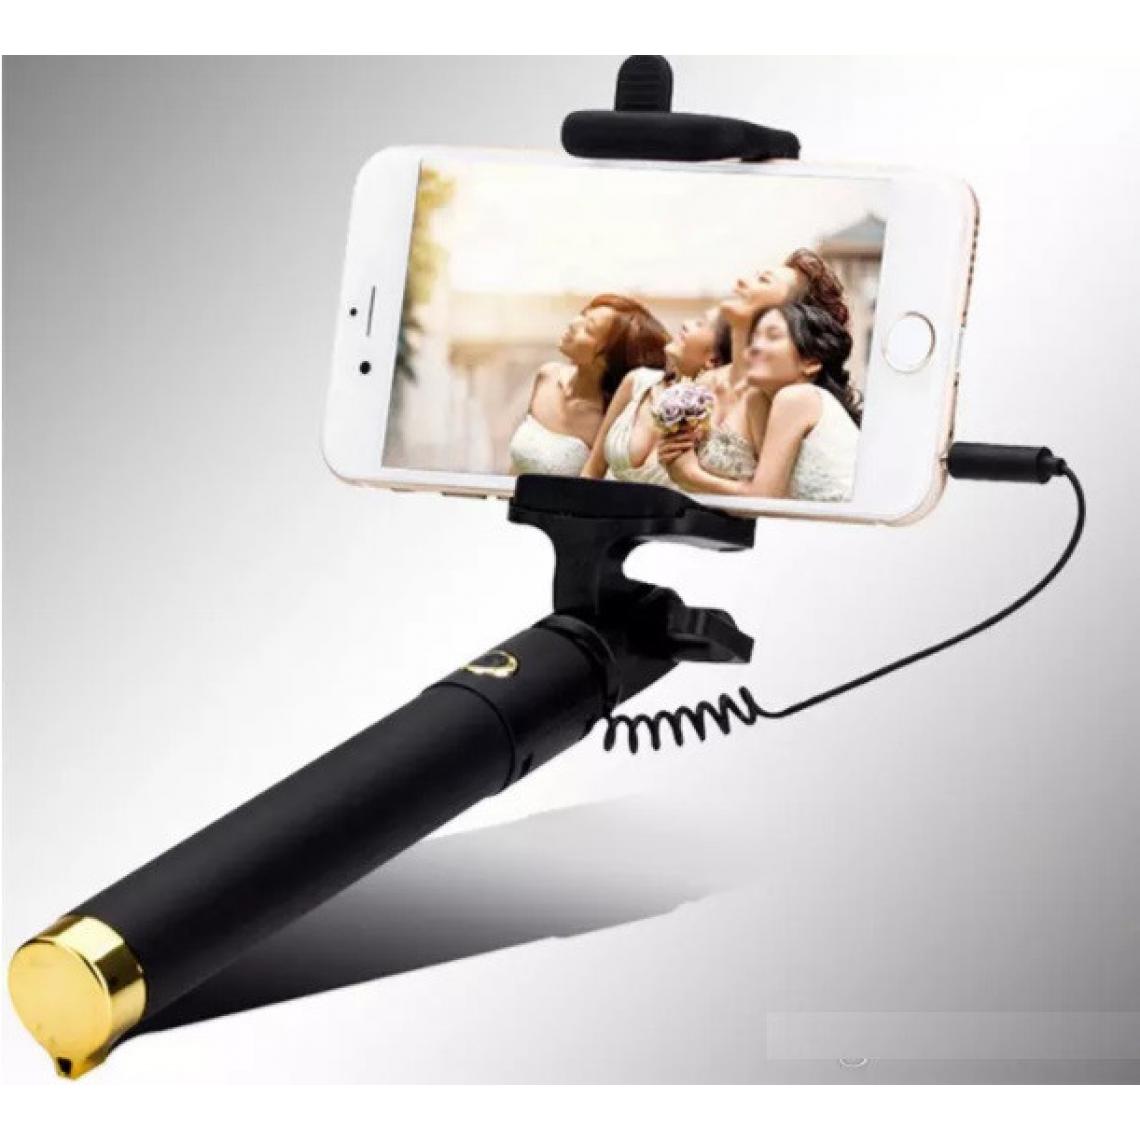 Shot - Perche Selfie Metal pour SAMSUNG Galaxy Note 10 Lite Smartphone avec Cable Jack Selfie Stick Android IOS Reglable Bouton Photo (OR) - Autres accessoires smartphone